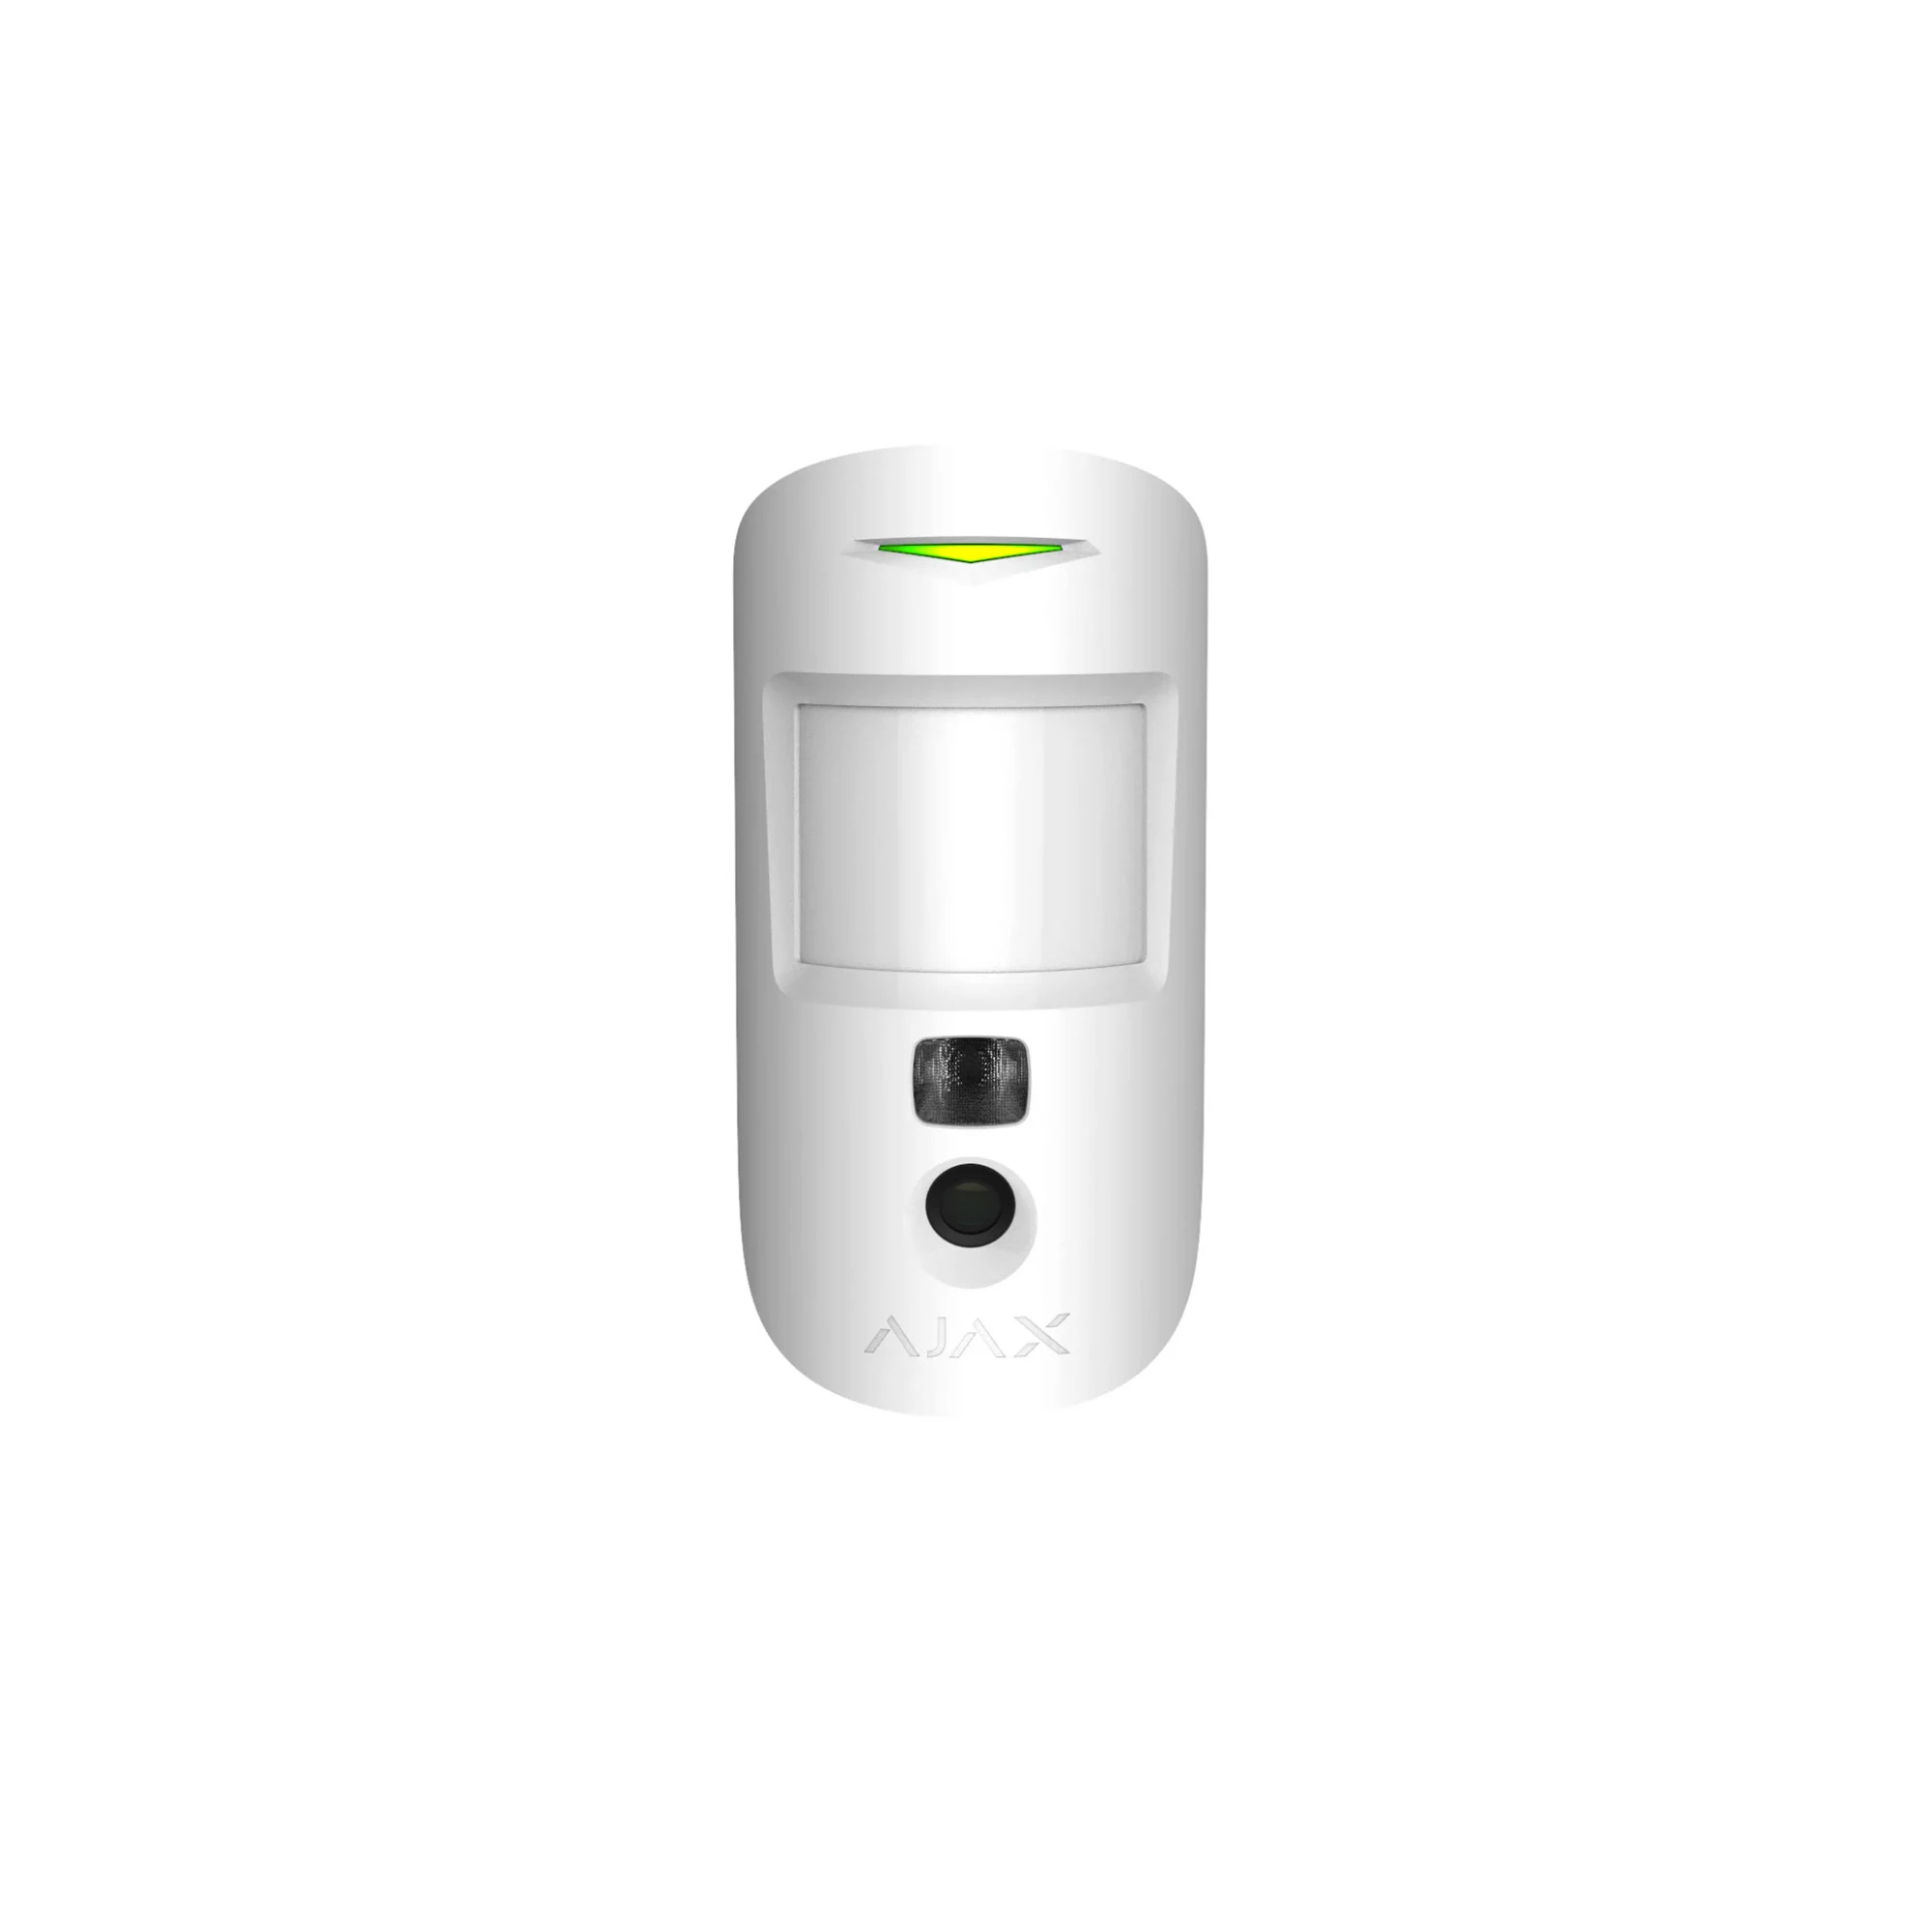 Ajax MotionCam White - бездротовий датчик руху з фотокамерою для верифікації тривог